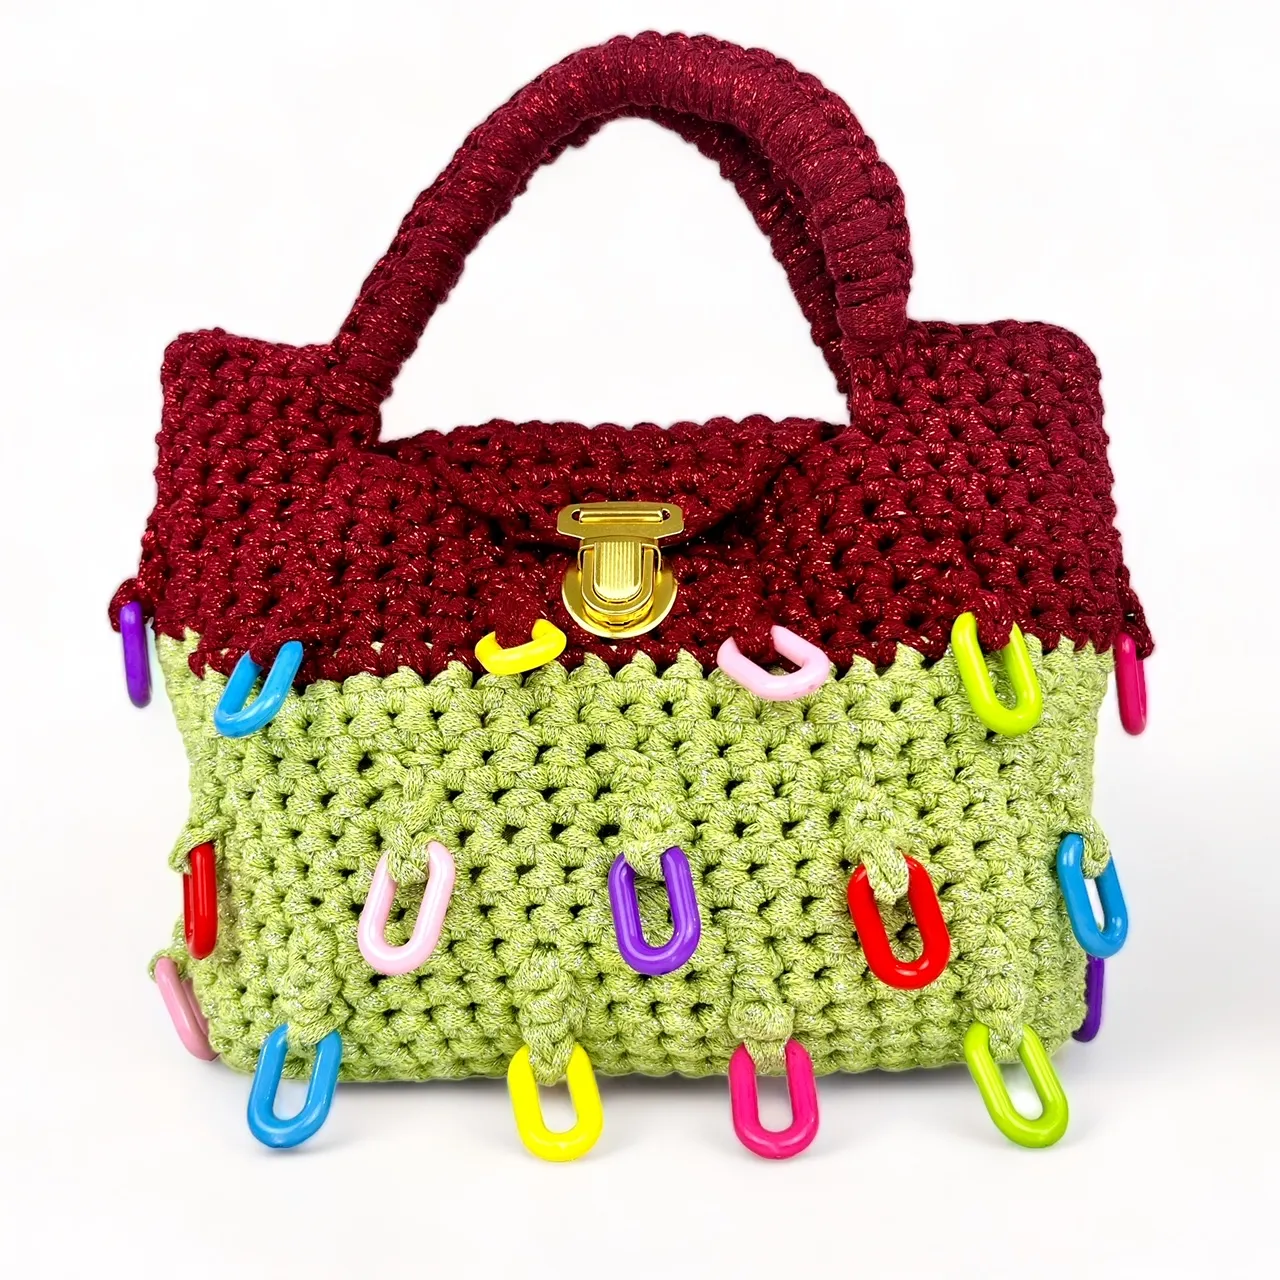 Jenny Crochet Purse